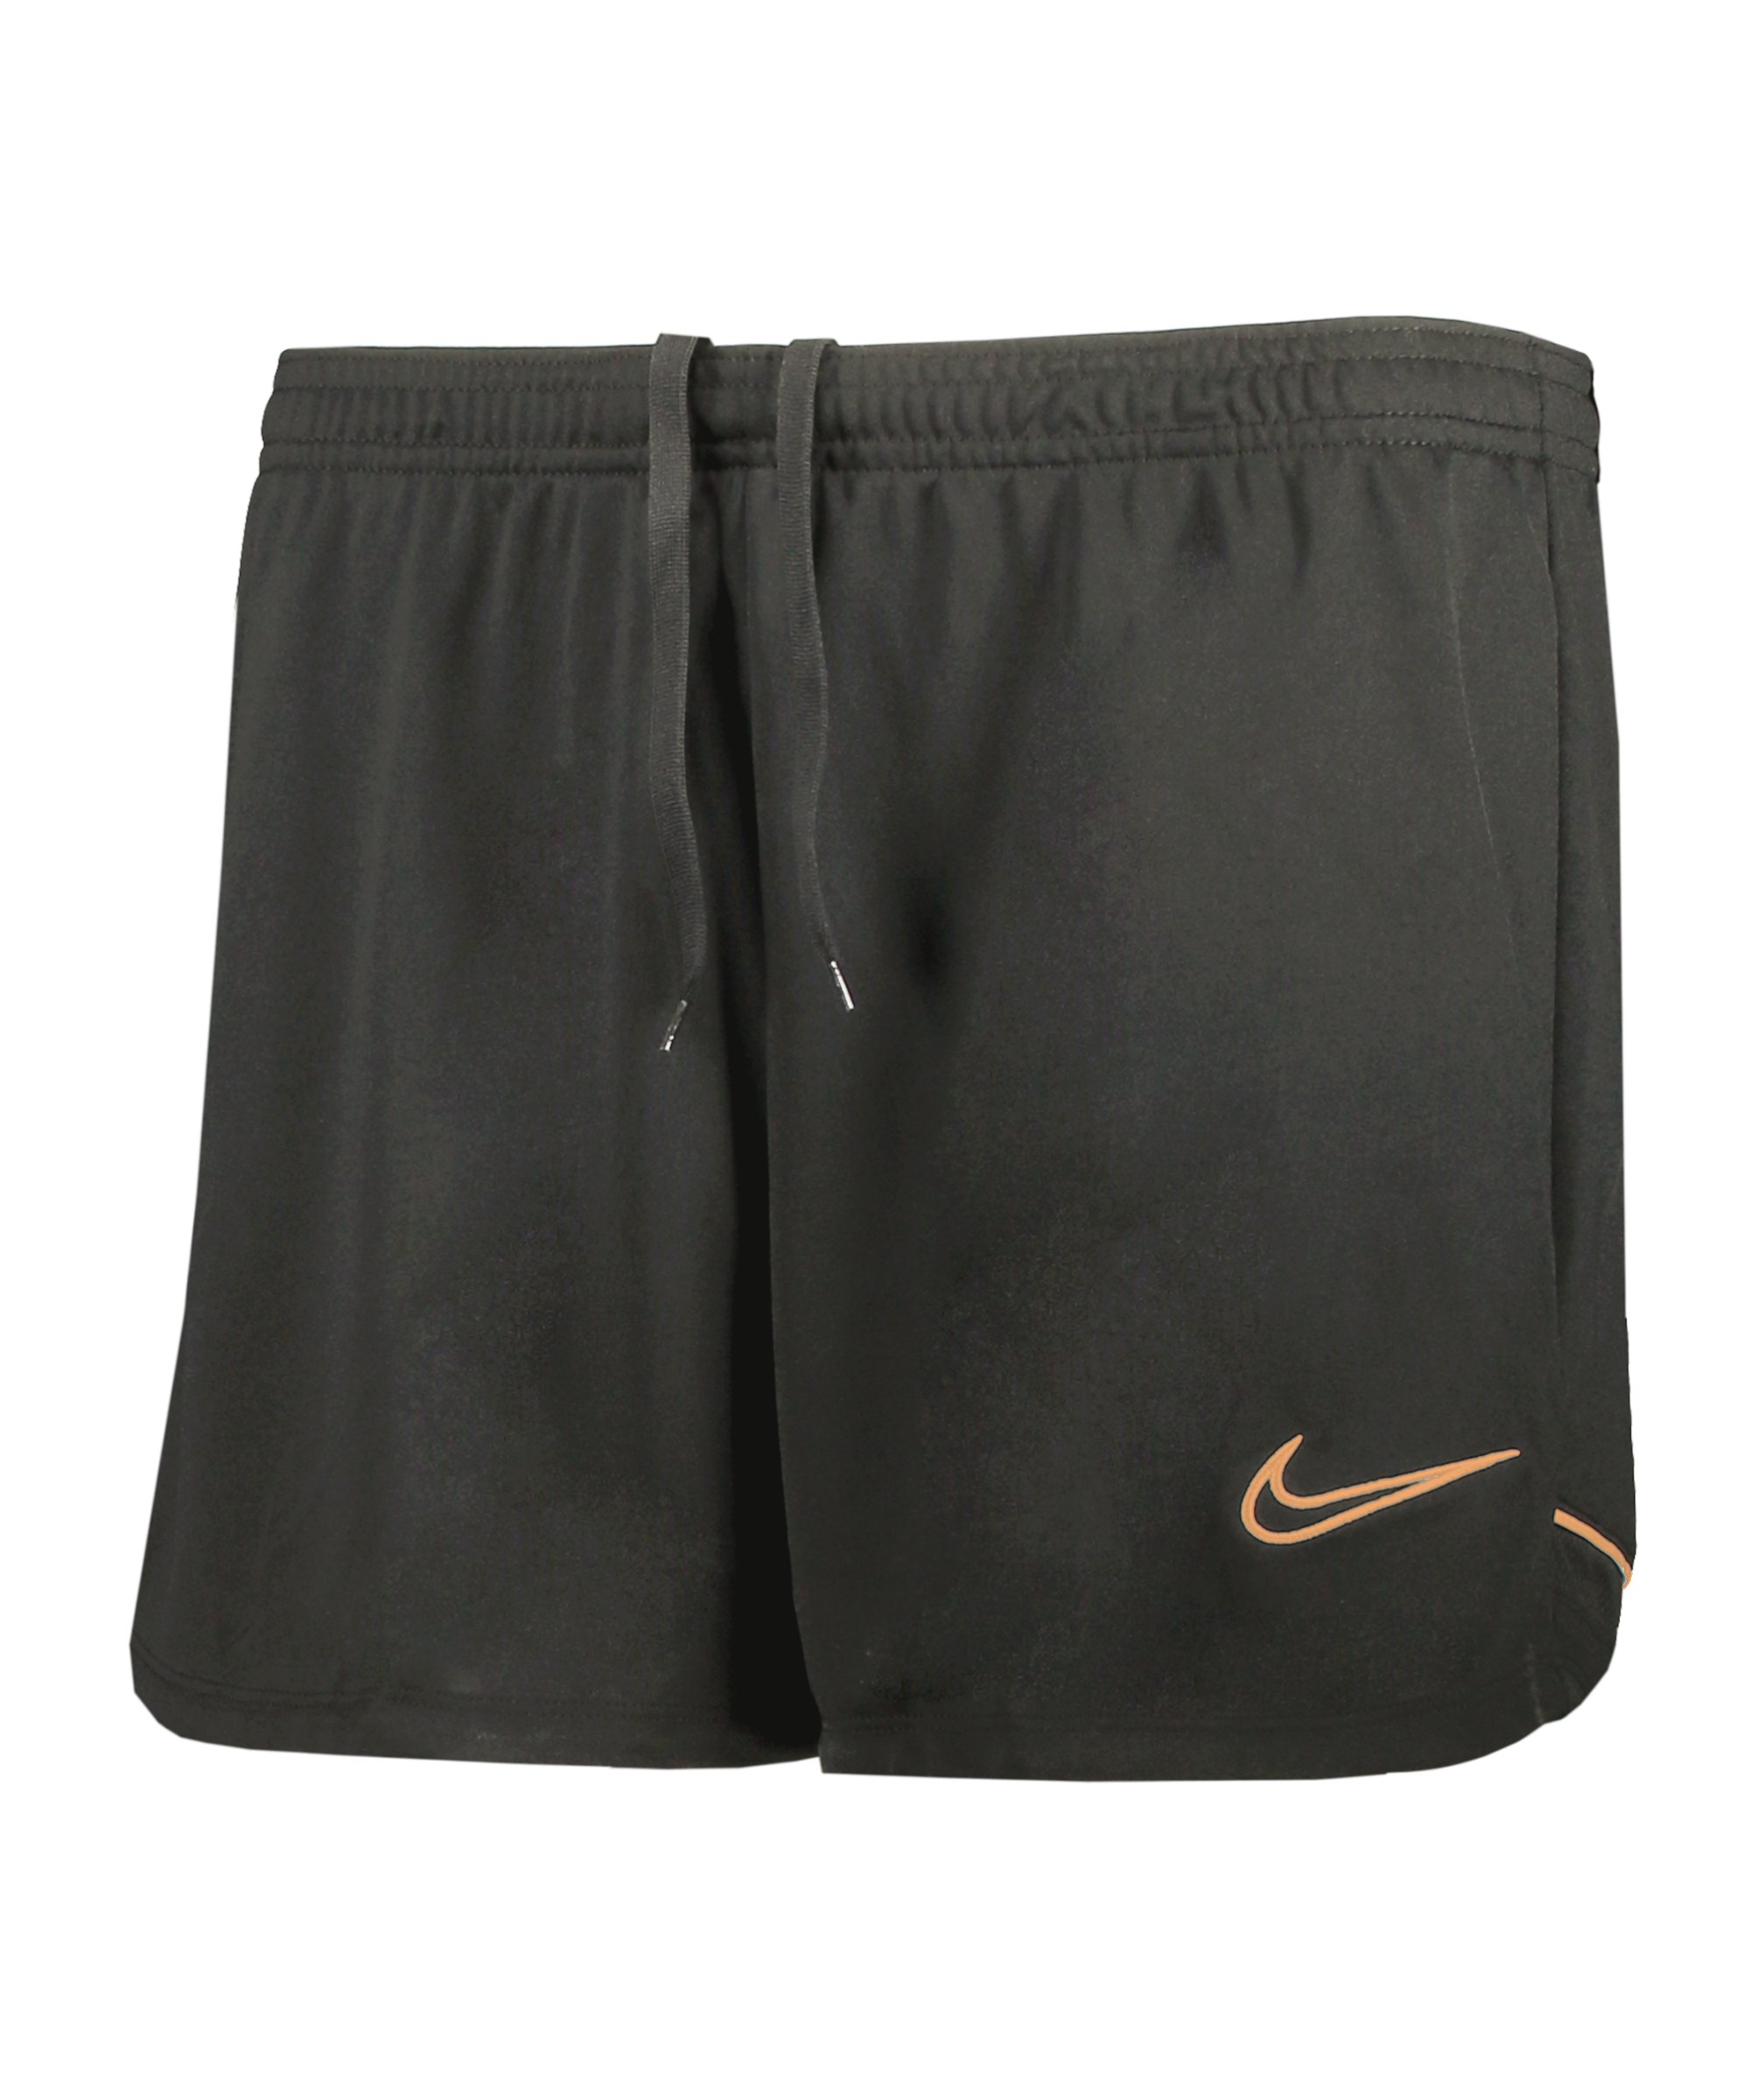 Nike Academy Short Damen Grau F070 - grau